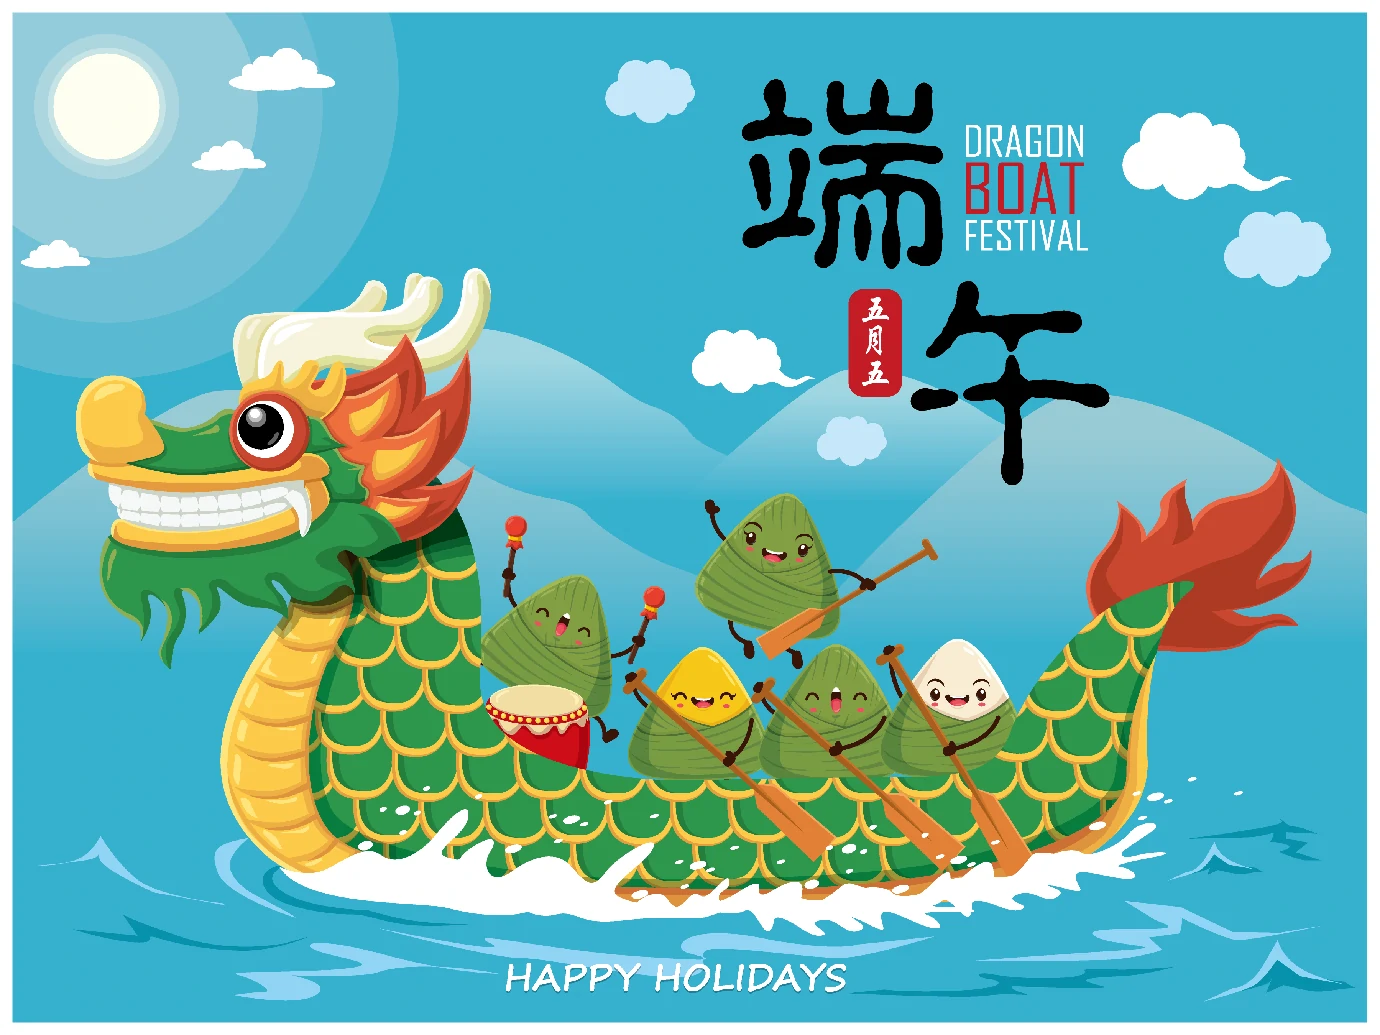 中国传统节日卡通手绘端午节赛龙舟粽子插画海报AI矢量设计素材【024】